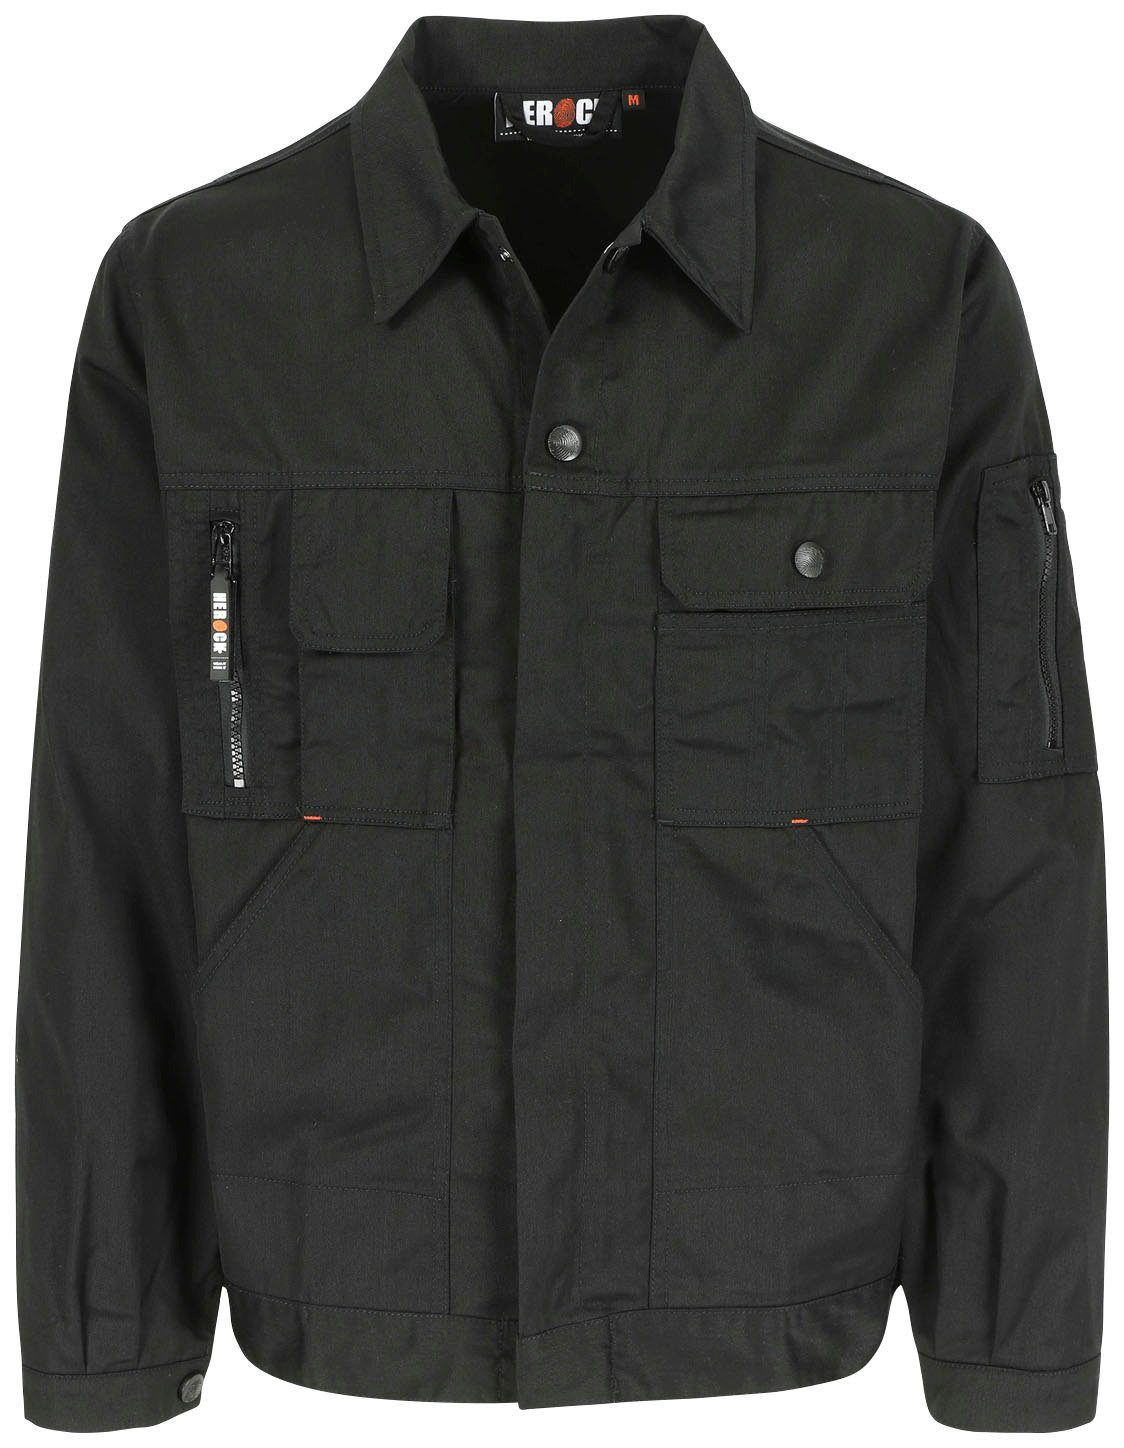 Wasserabweisende Herock Jacke Bündchen einstellbare mit vielen und Arbeitsjacke Aton Jacke Taschen